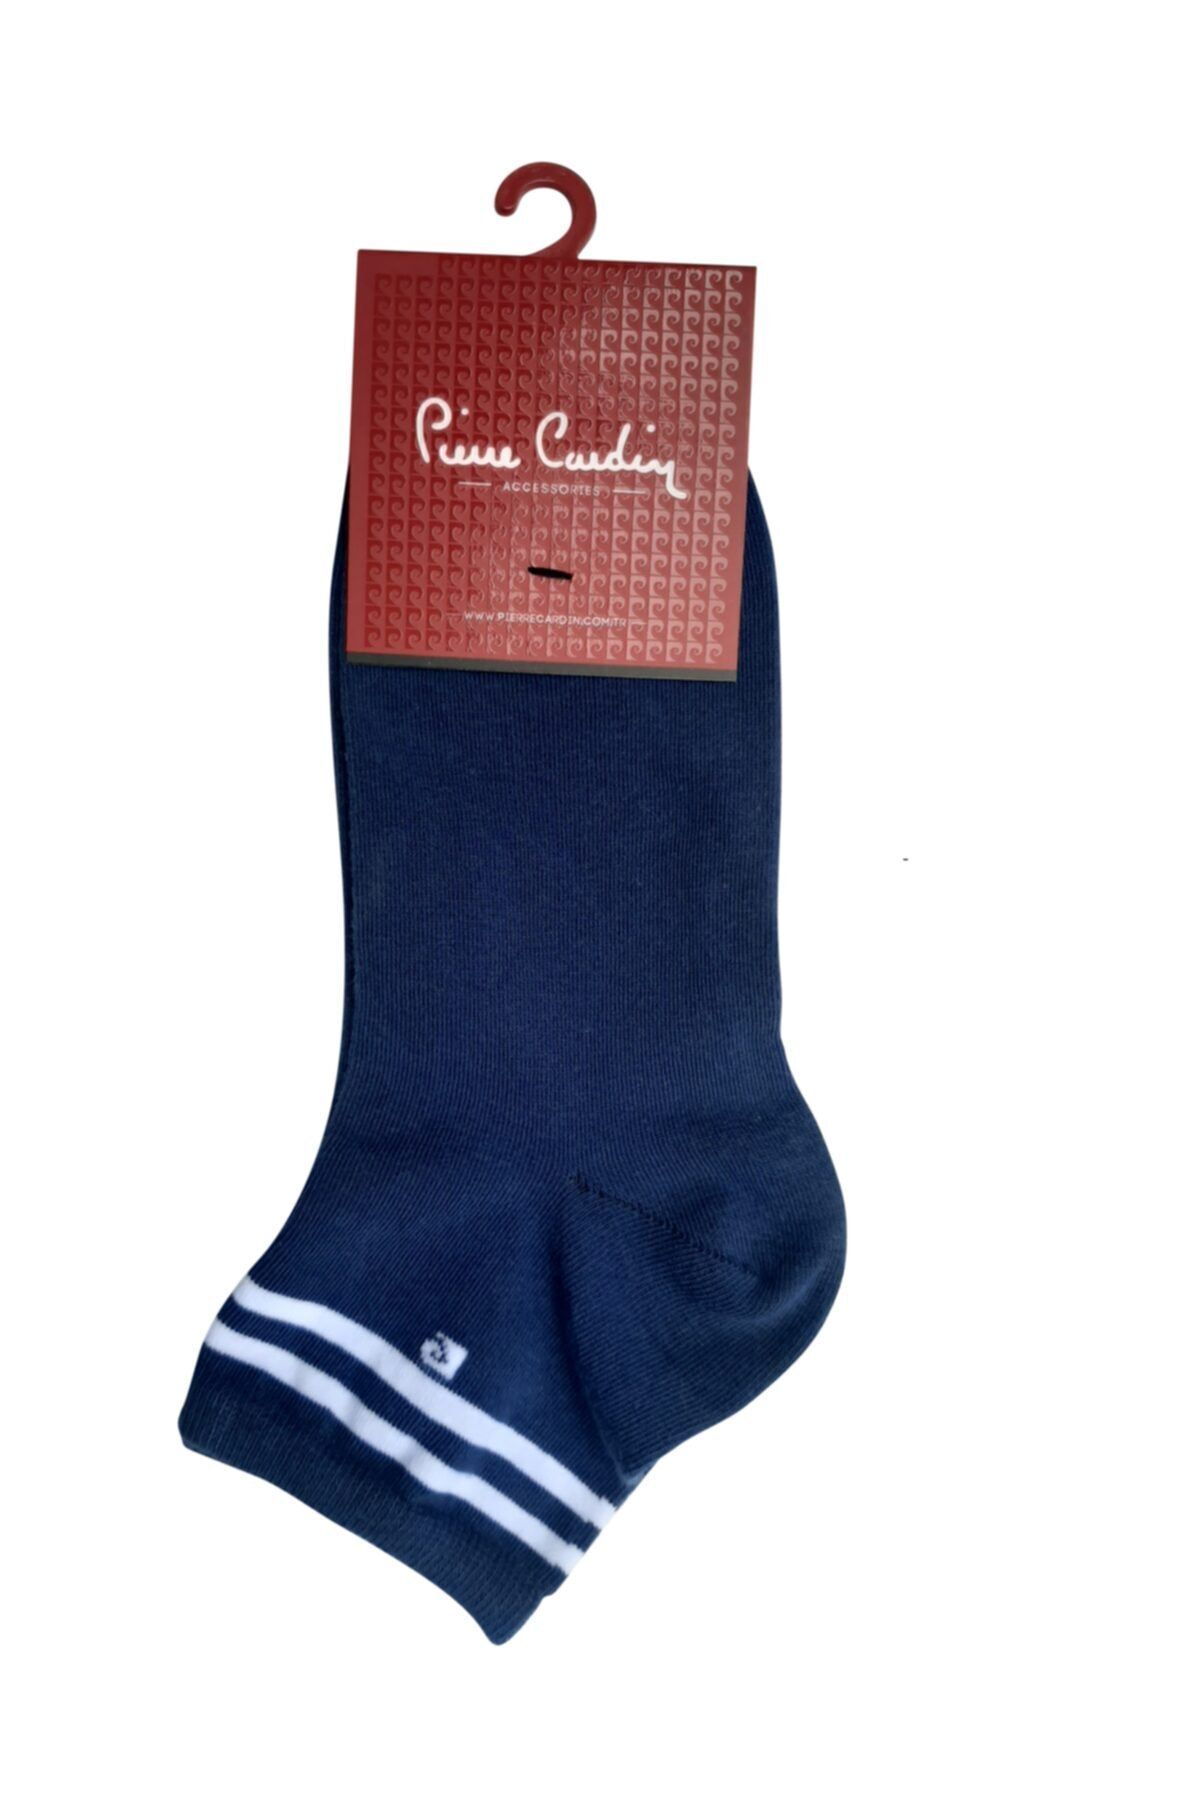 Pierre Cardin Çemberli Kısa Konç Pamuk Çorap Lacivert/beyaz